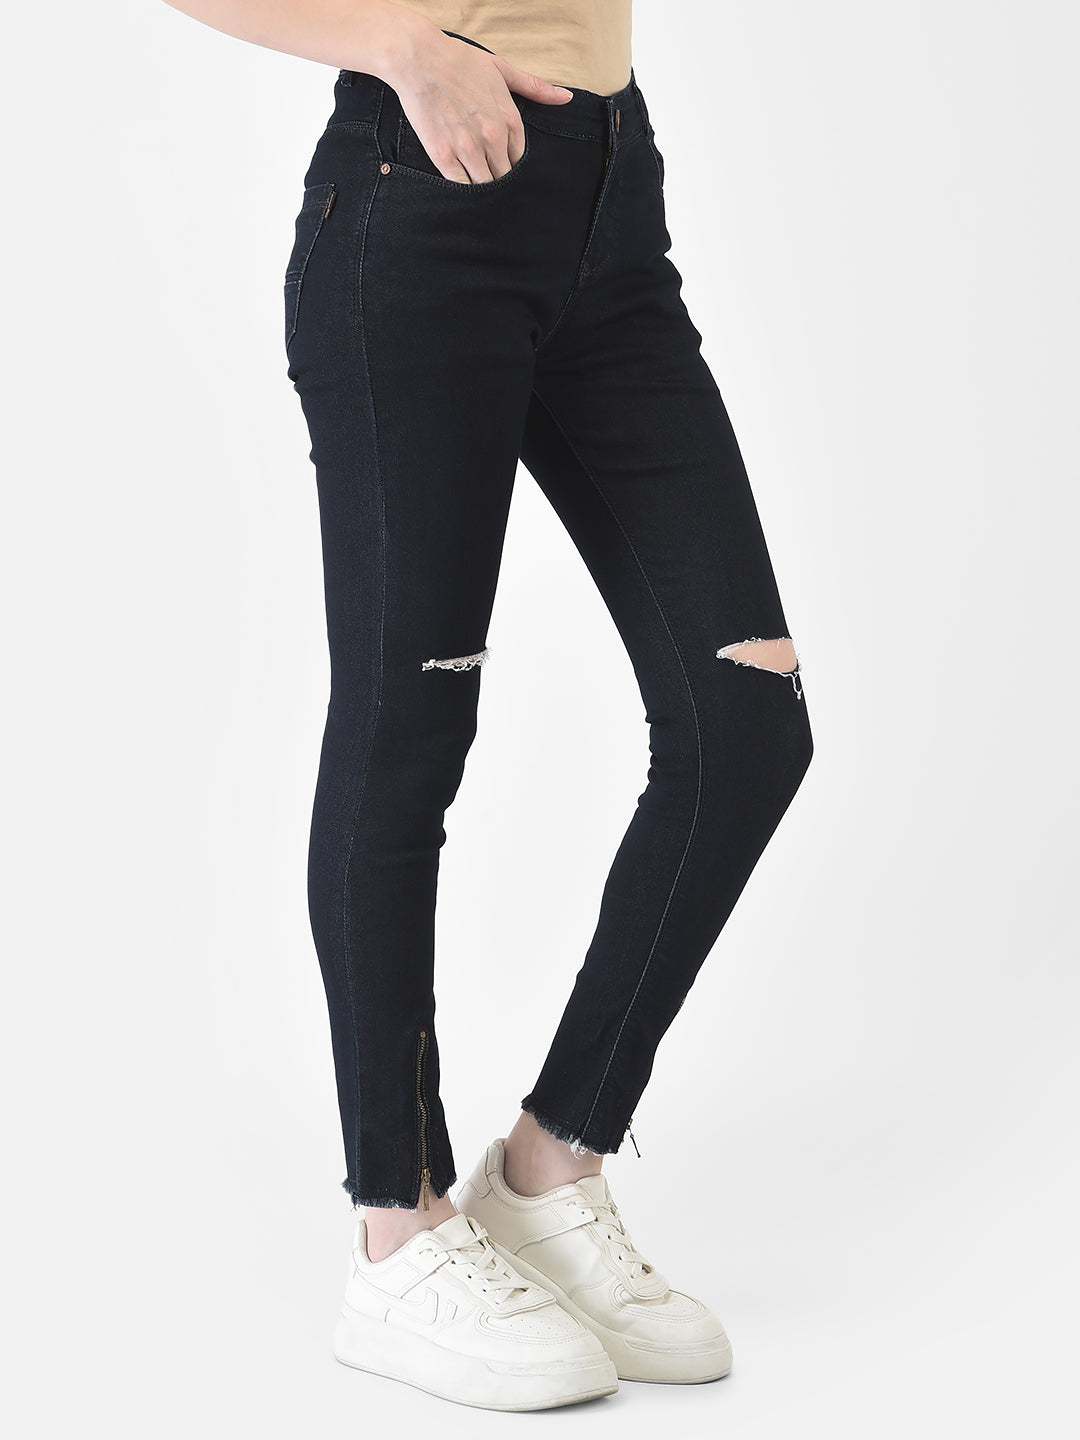 Navy Blue Slash Knee Jeans - Women Jeans